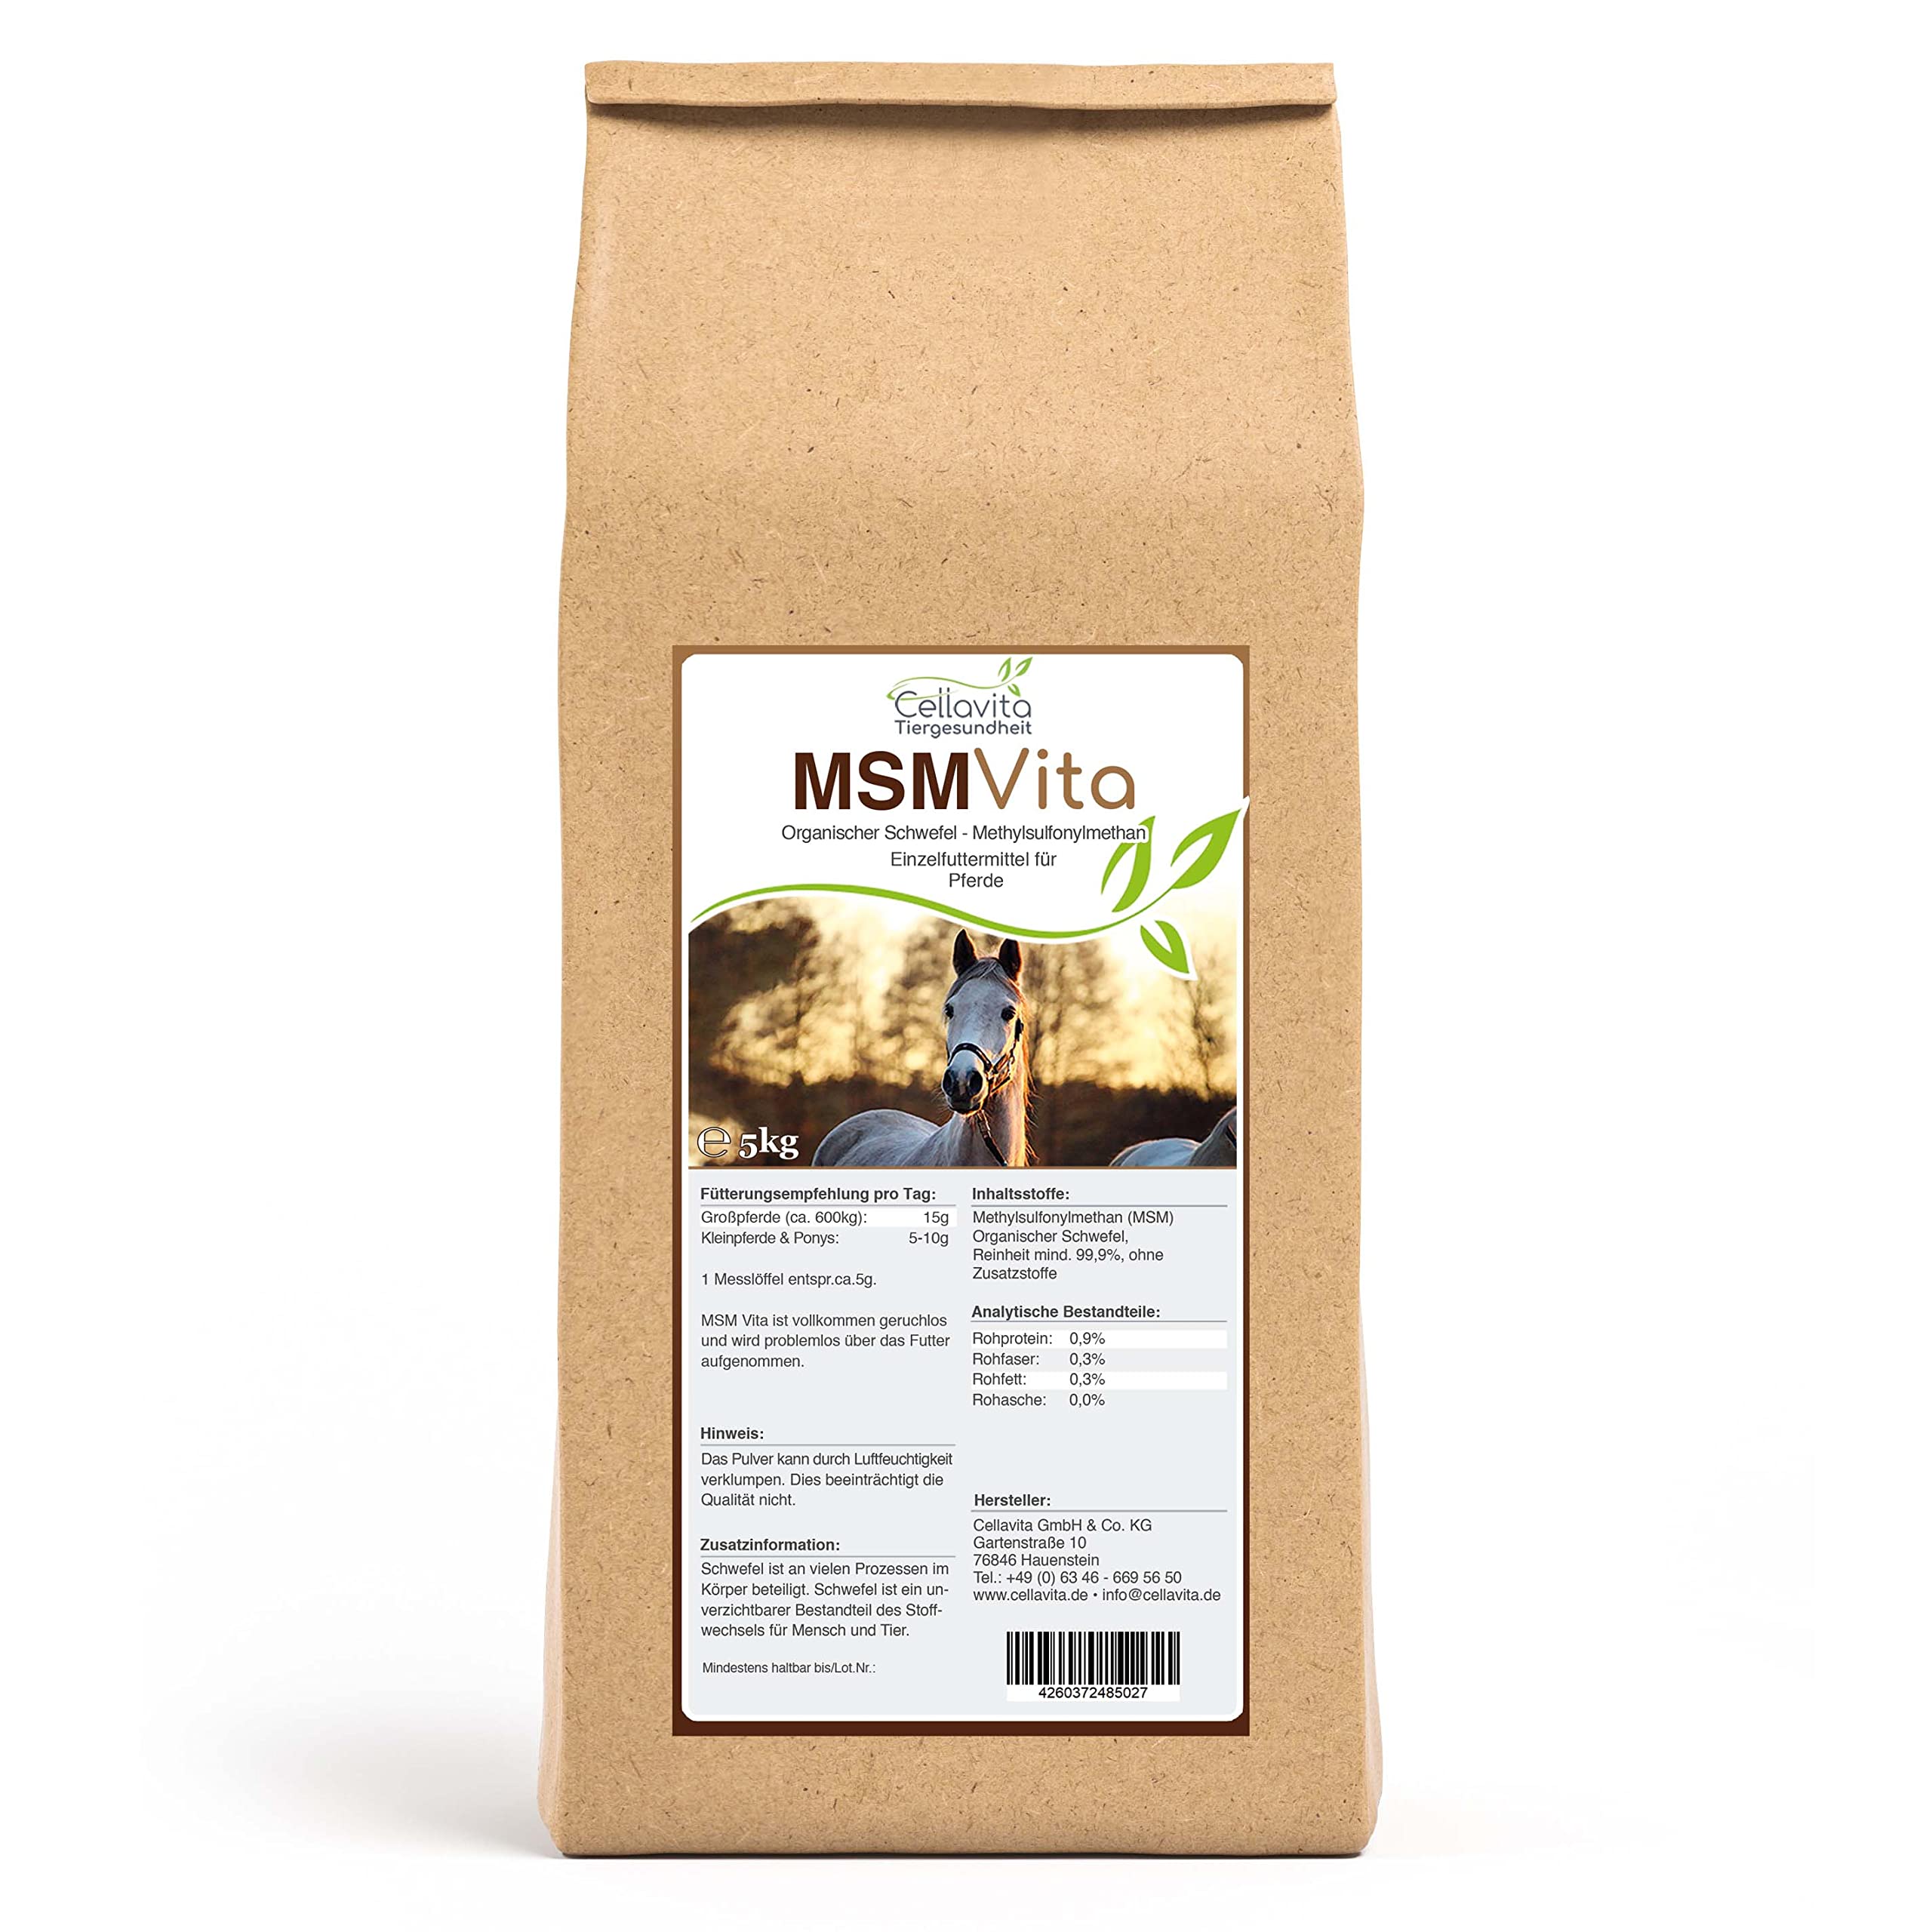 Cellavita | MSM - Organischer Schwefel - 5 kg für Pferde | pharmazeutische Qualität Schwefel pur 99,9% rein - 5 kg Eimer